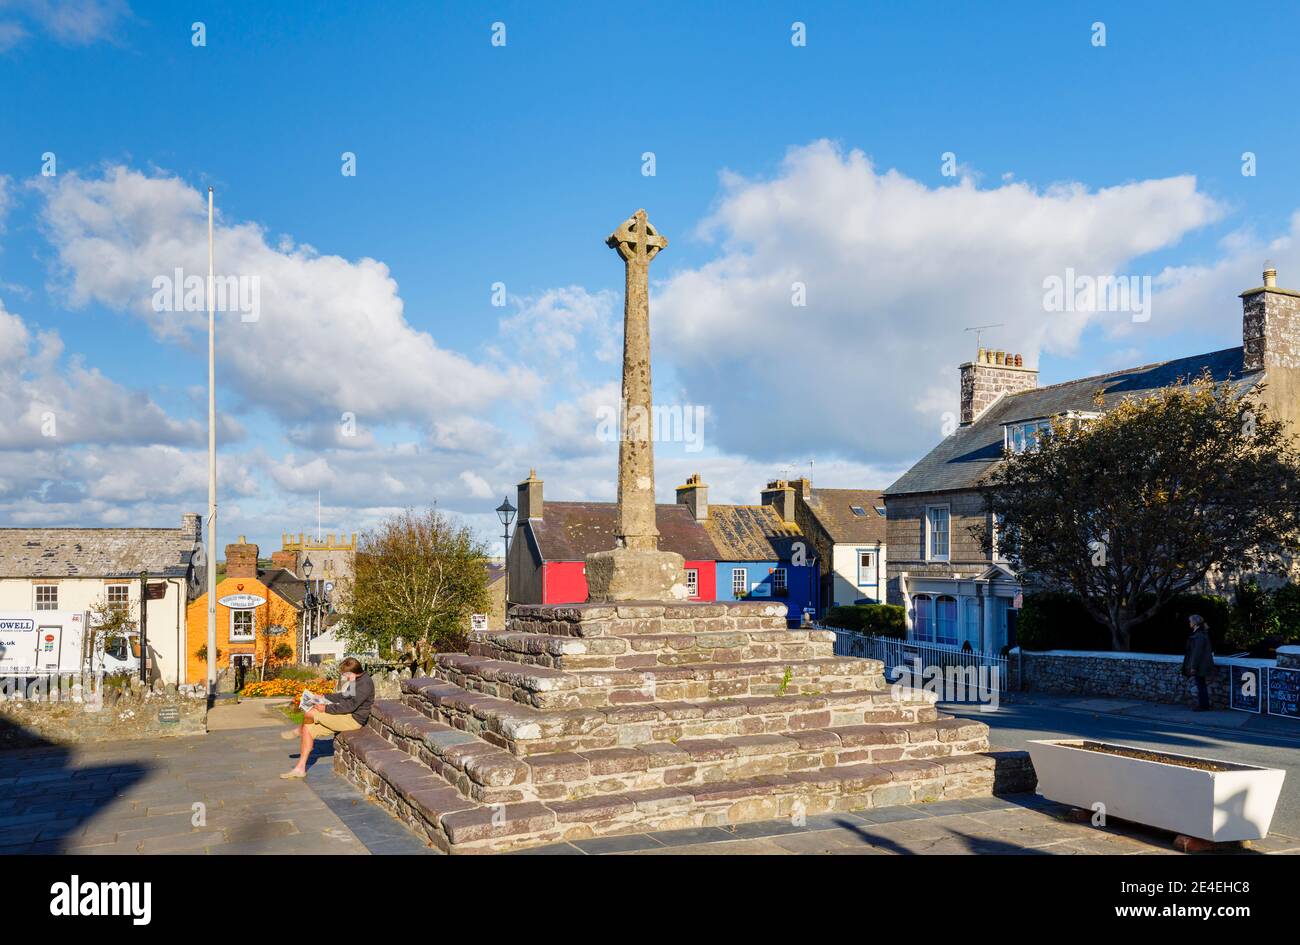 Le mémorial de guerre de Cross Square, au centre de St Davids, une petite ville cathédrale de Pembrokeshire, au sud-ouest du pays de Galles Banque D'Images